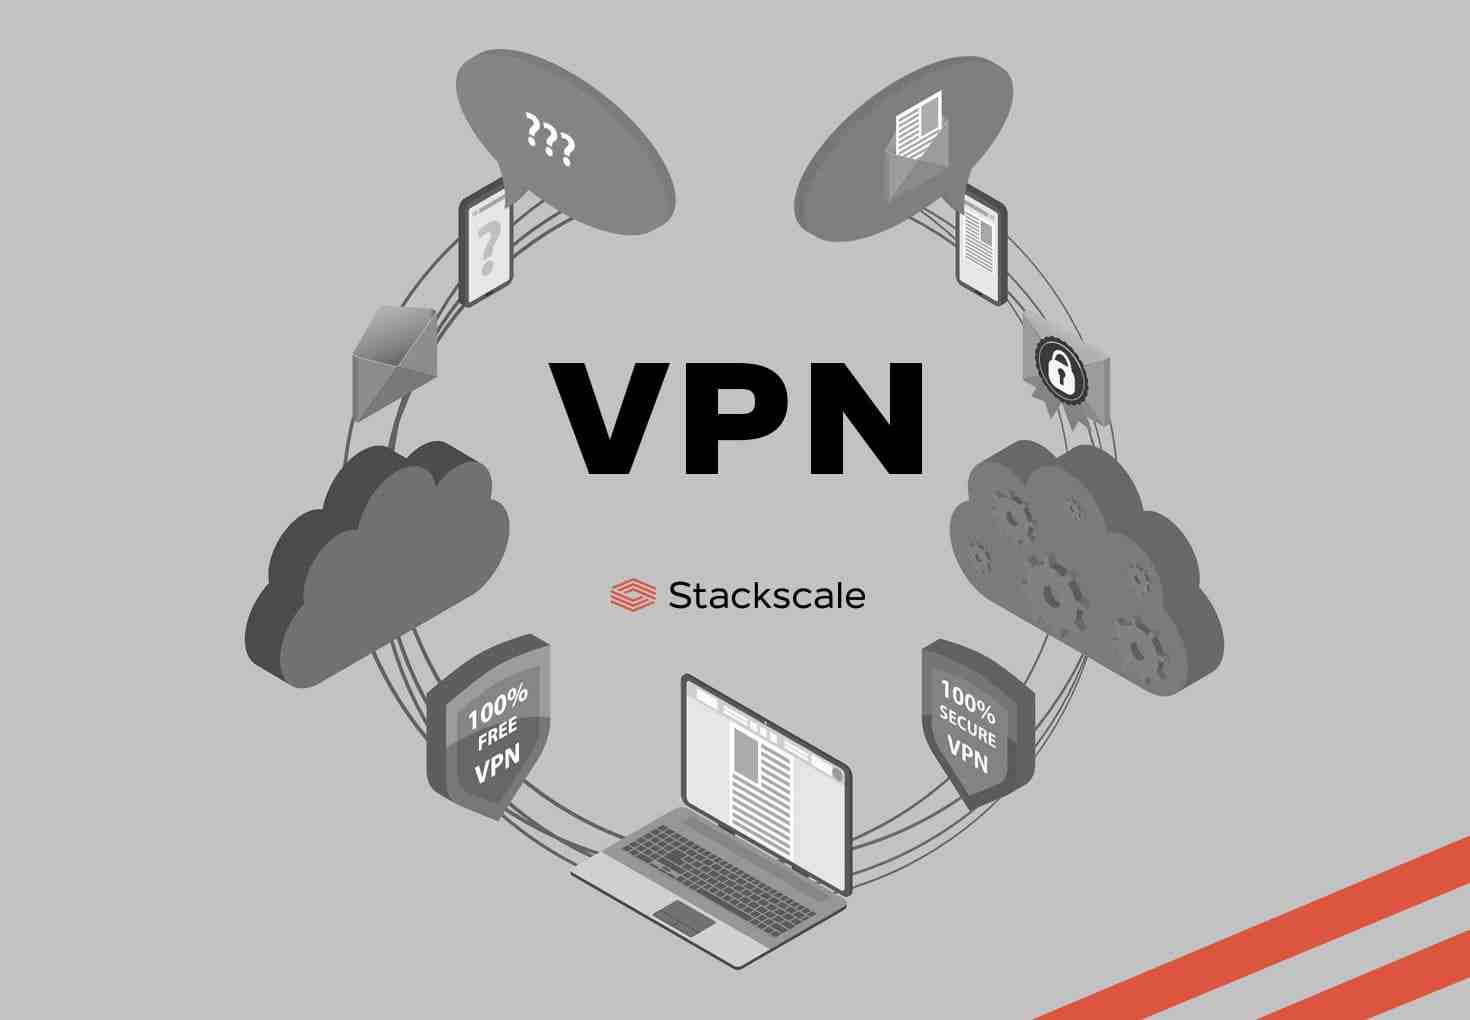 Why choose Azure VPN?